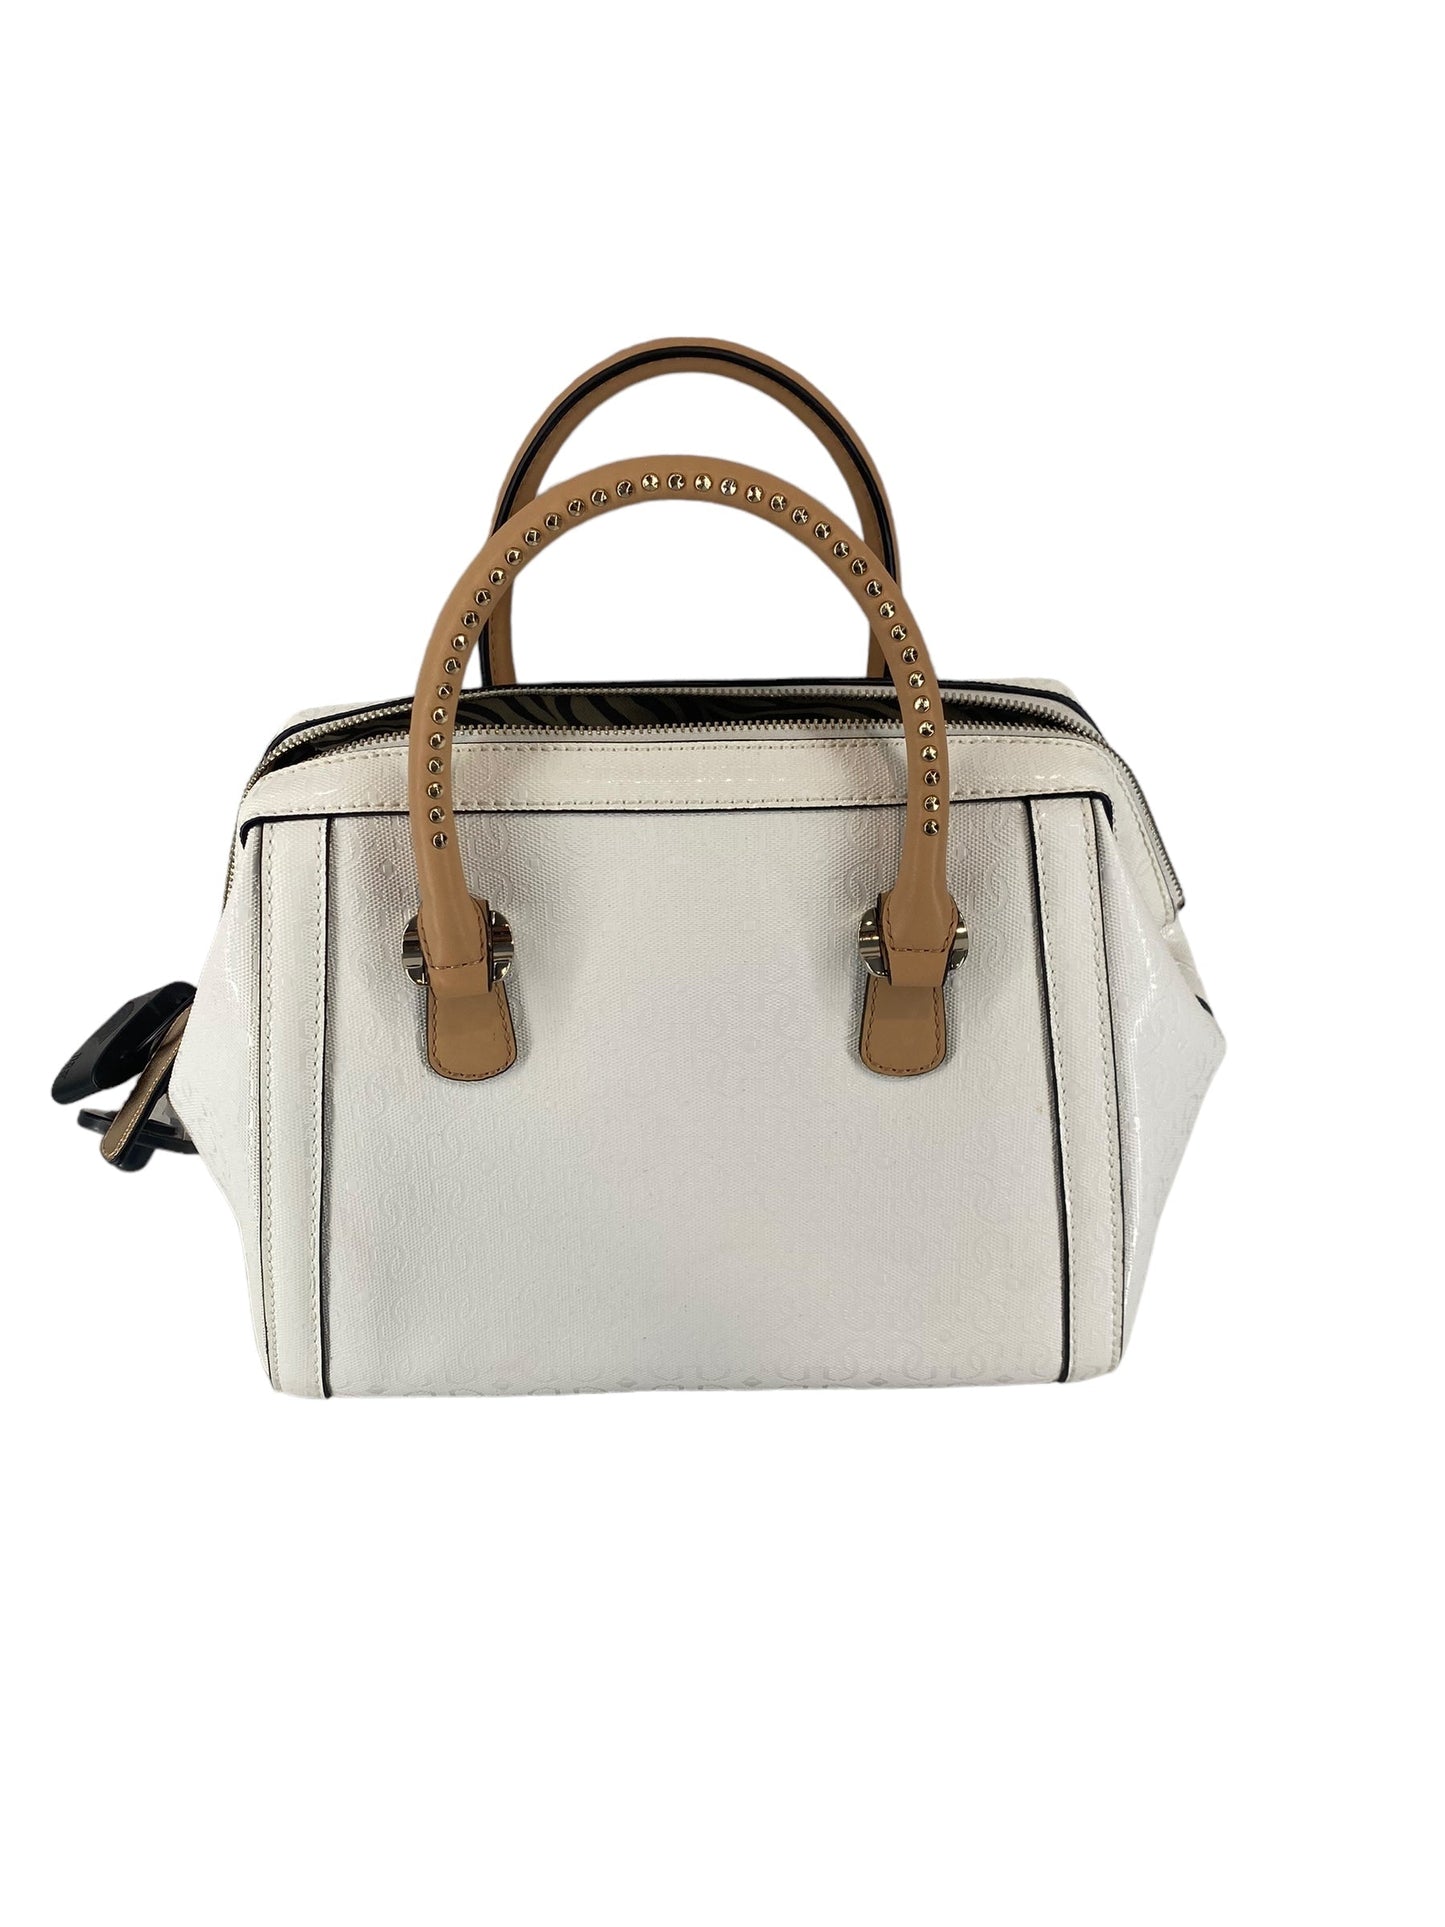 Handbag Designer Guess, Size Medium